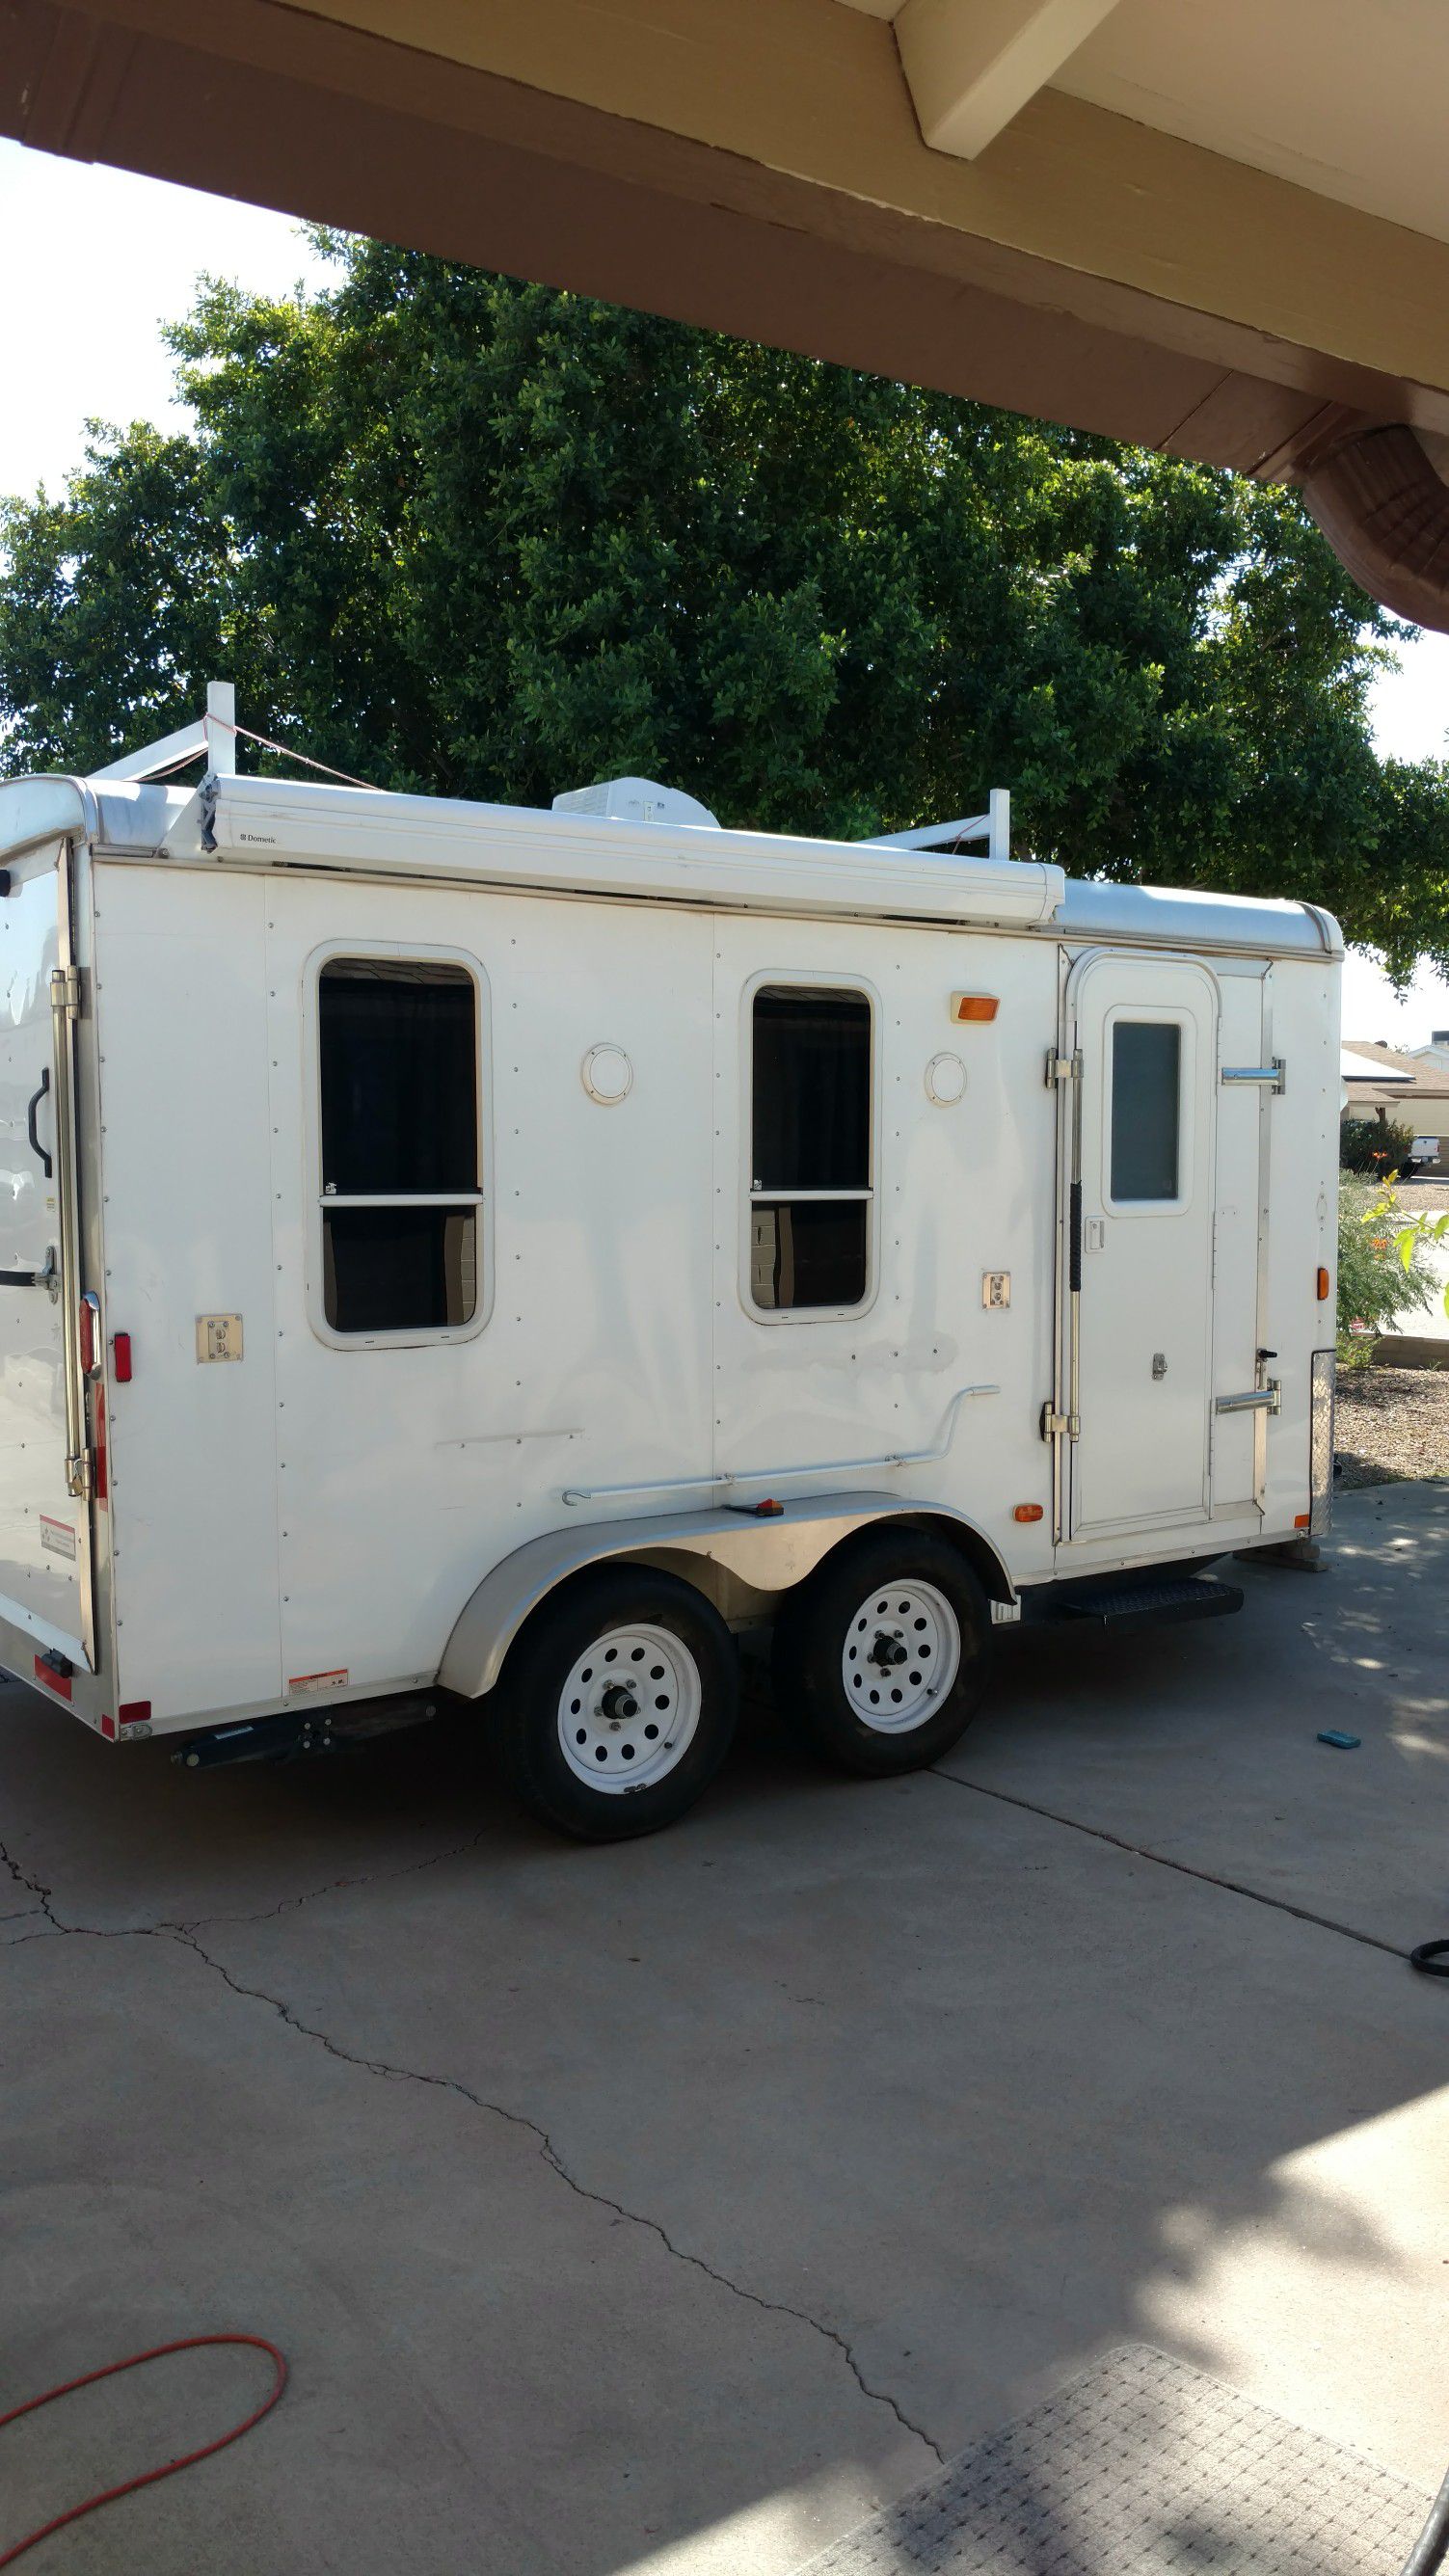 Toy hauler RV camper trailer Built in 2010.